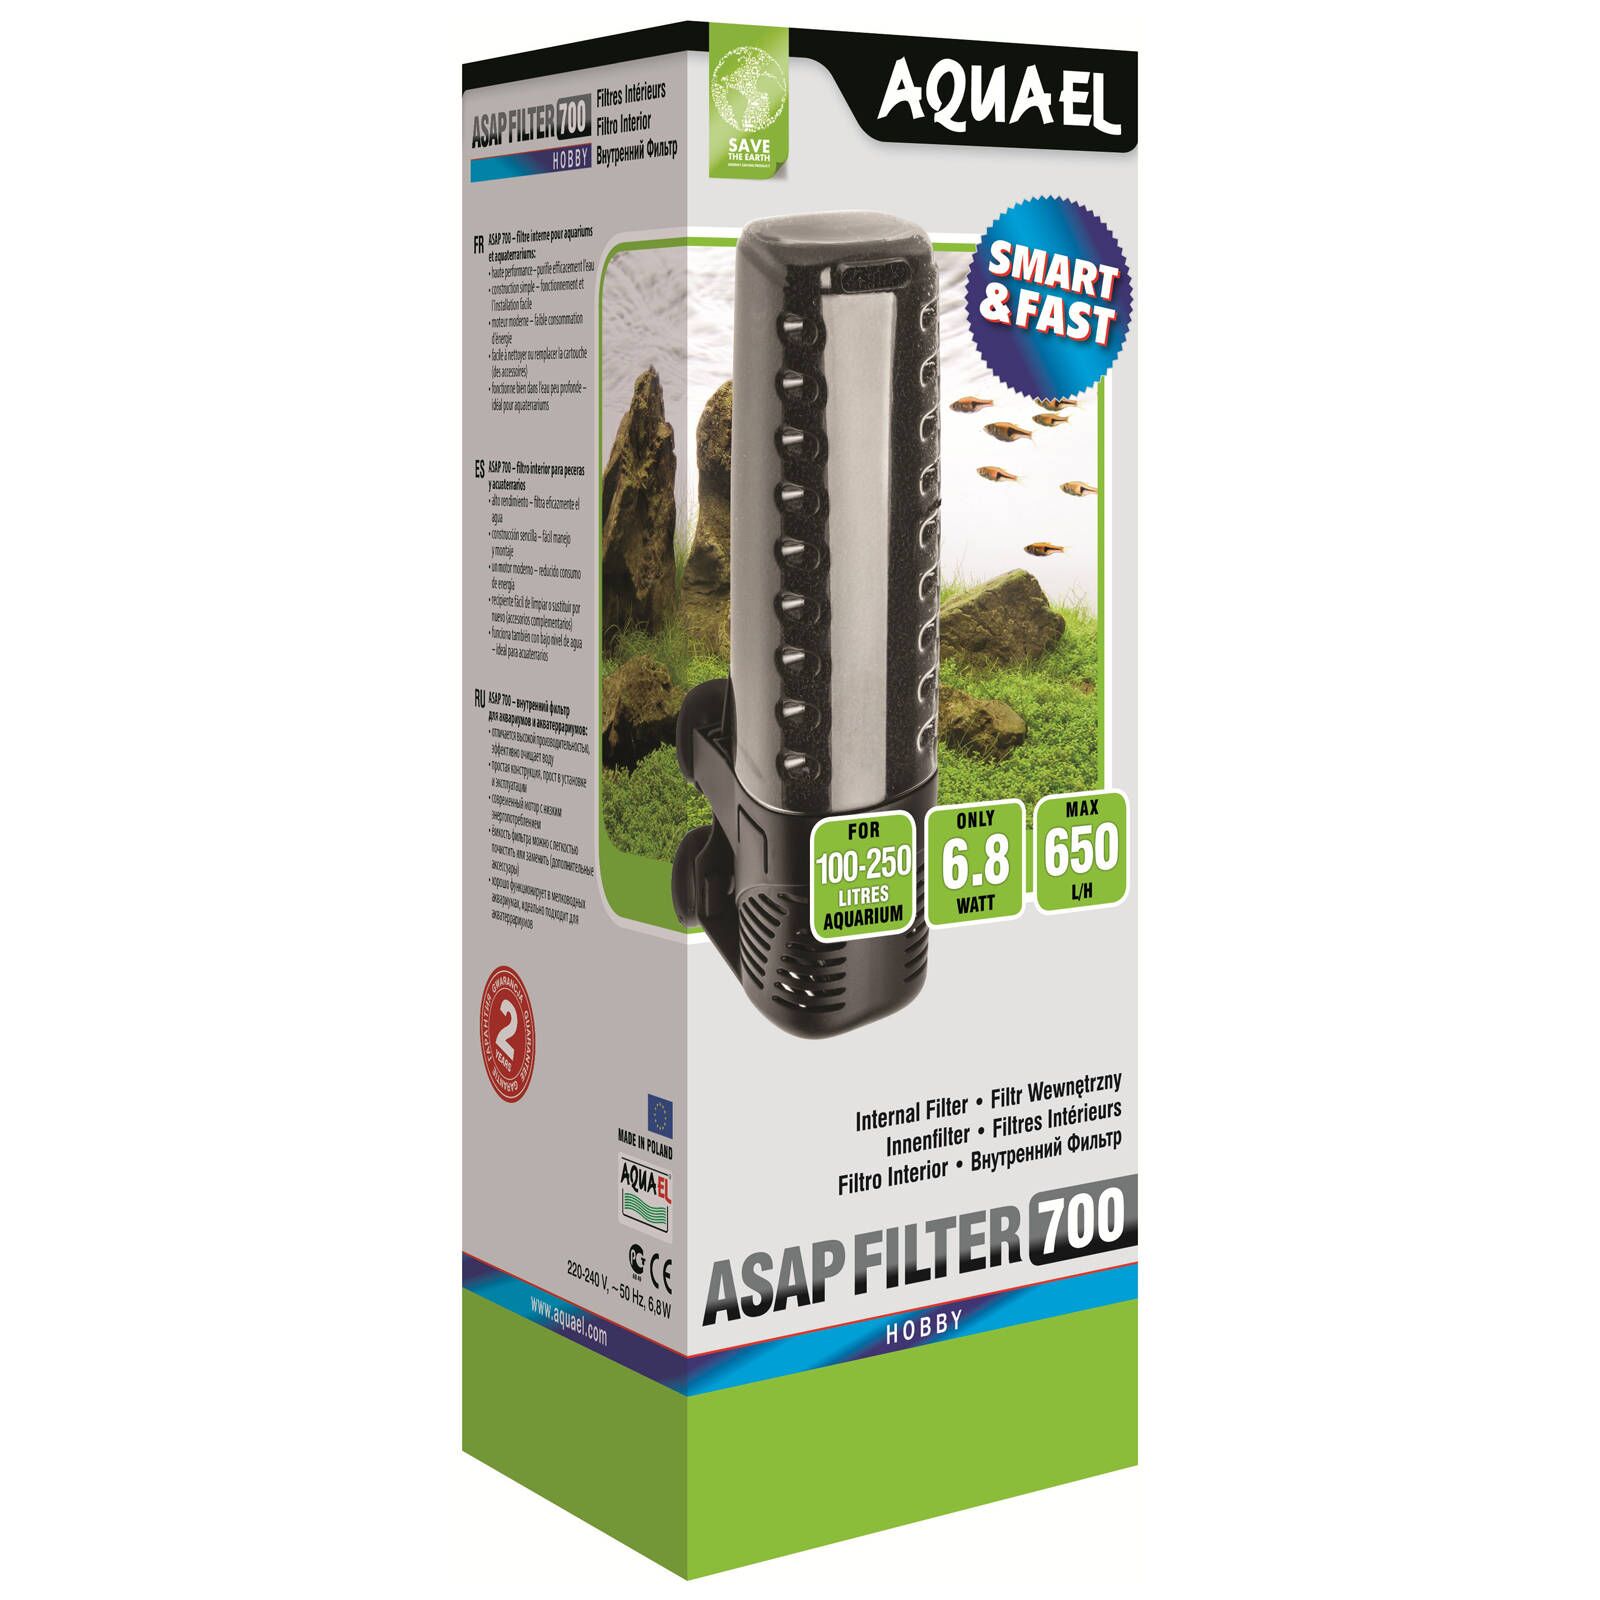 Aquael - ASAP Filter